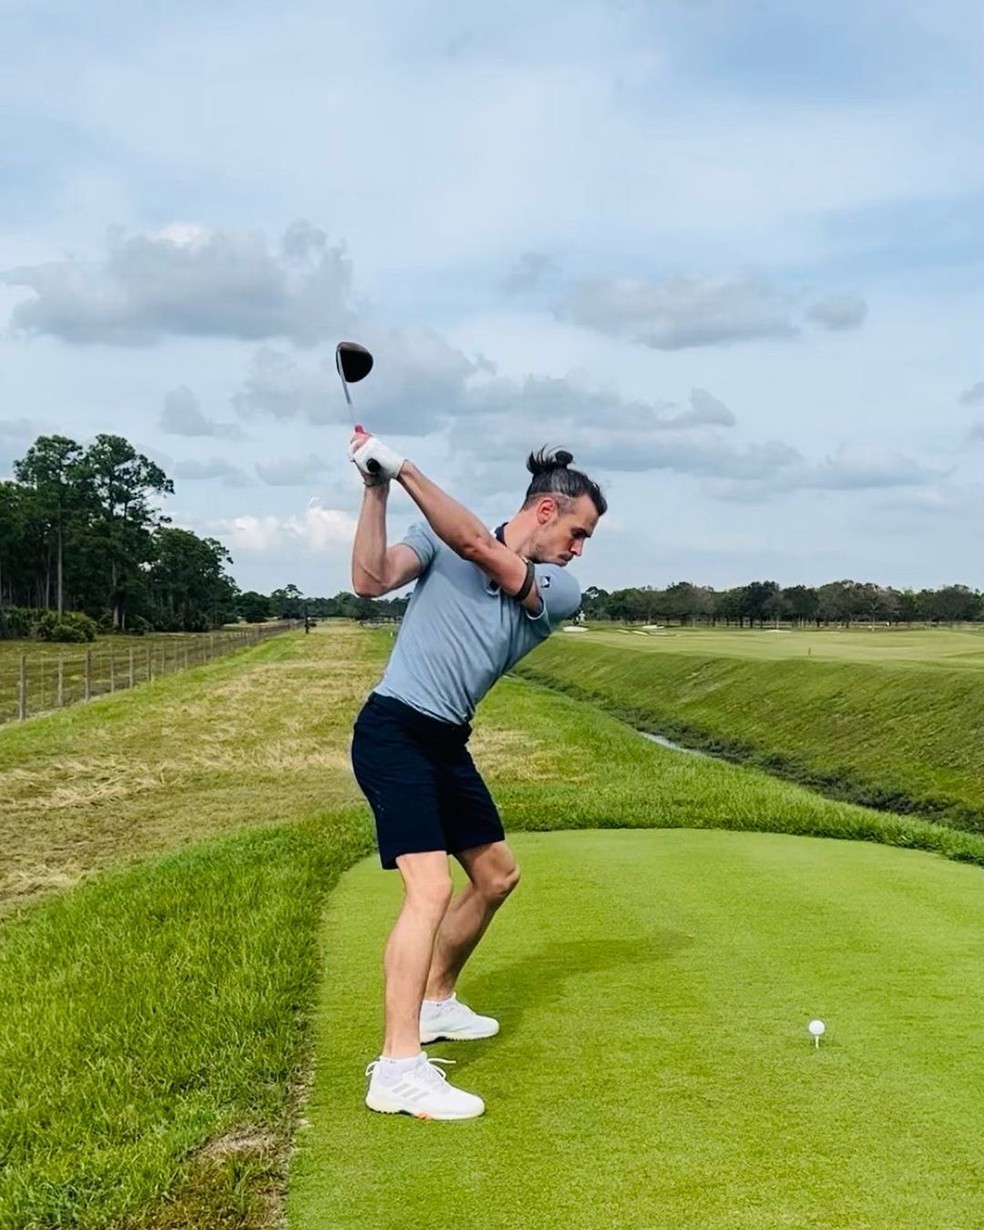 Bale jogando golfe em campo nos Estados Unidos — Foto: Reprodução / Instagram